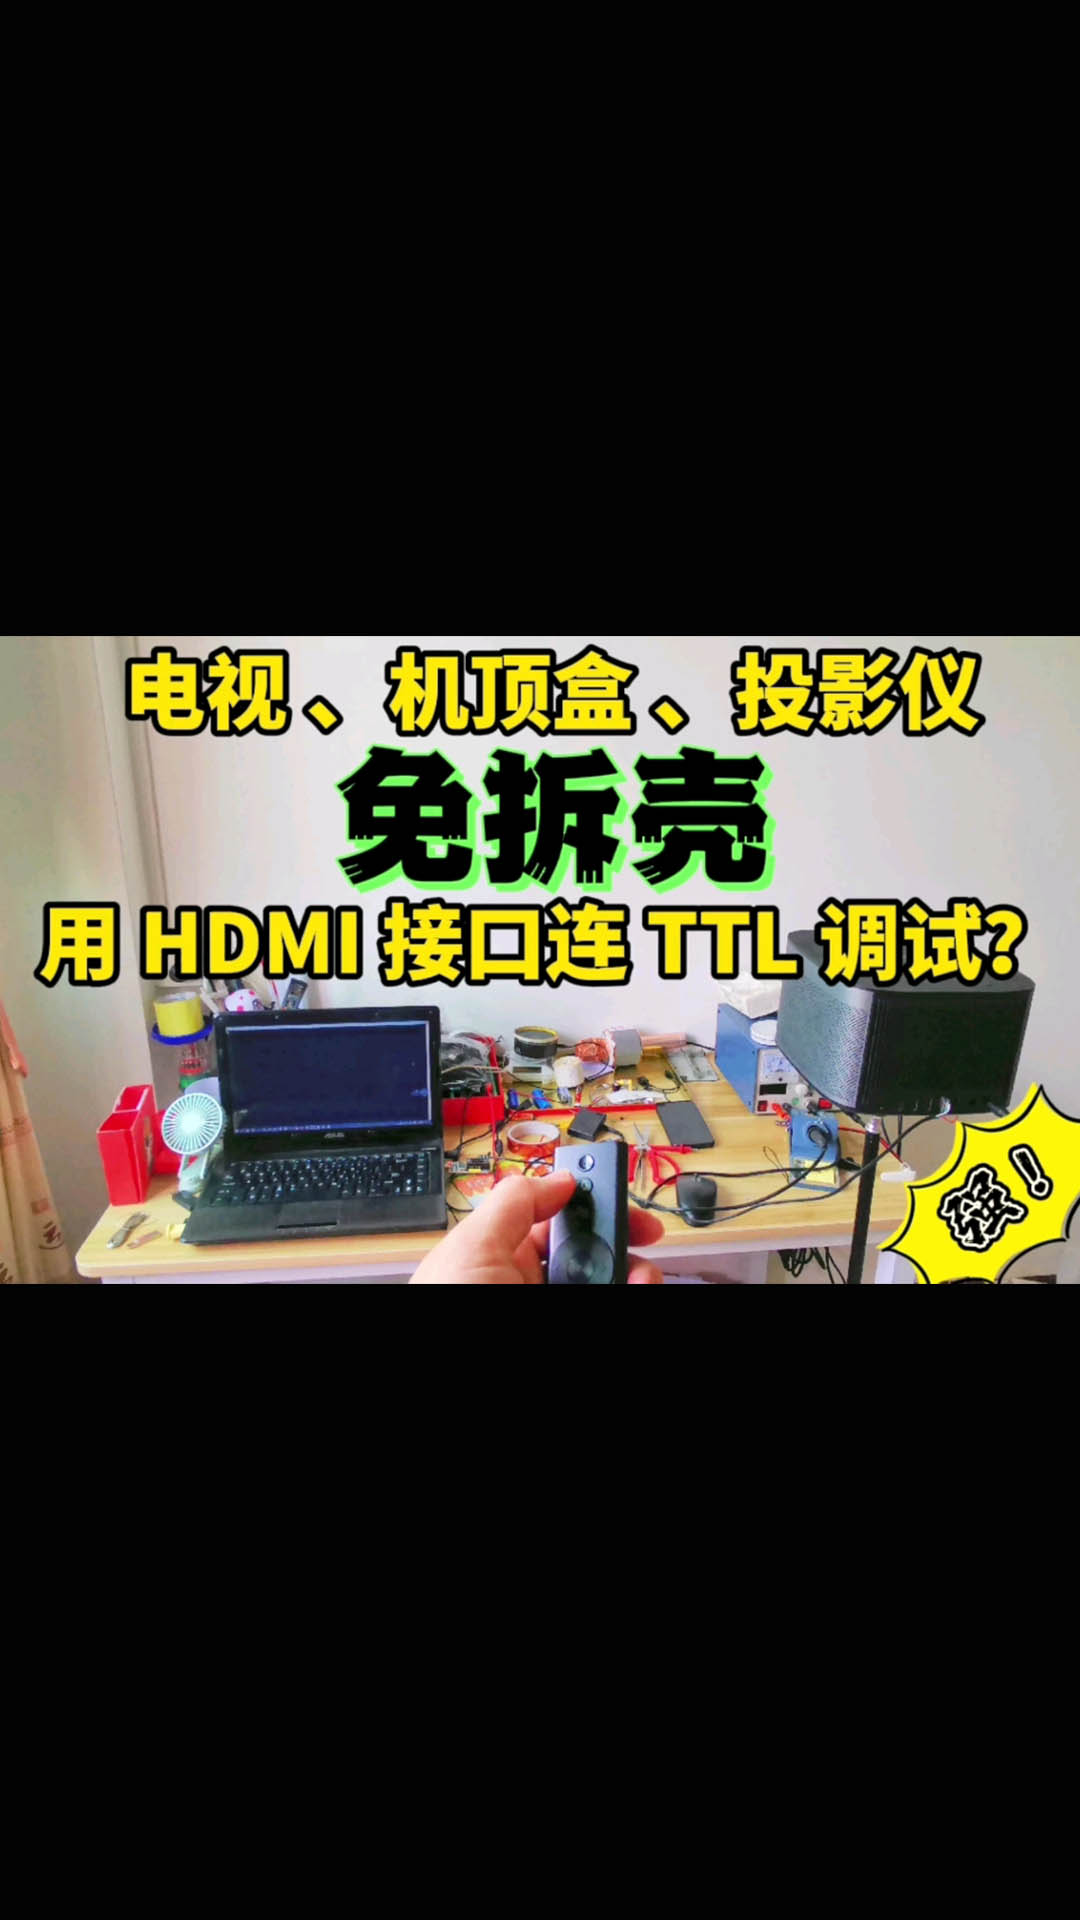 教你用電視的HDMI接口進行TTL調試 